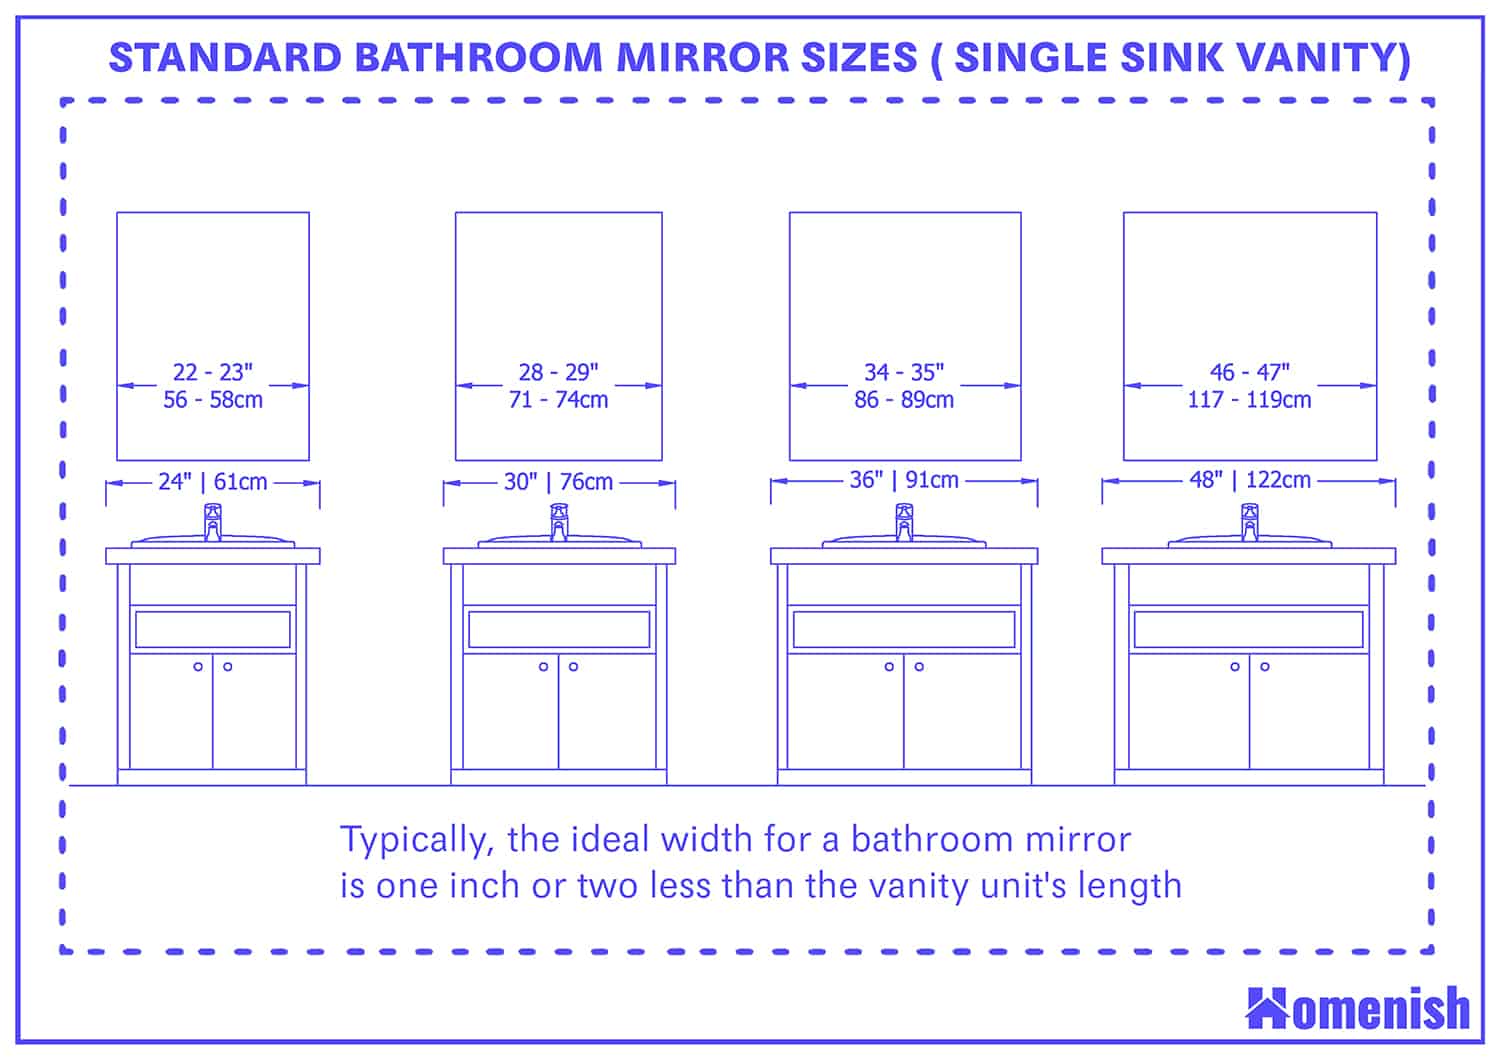 標準浴室鏡尺寸為單槽梳妝台